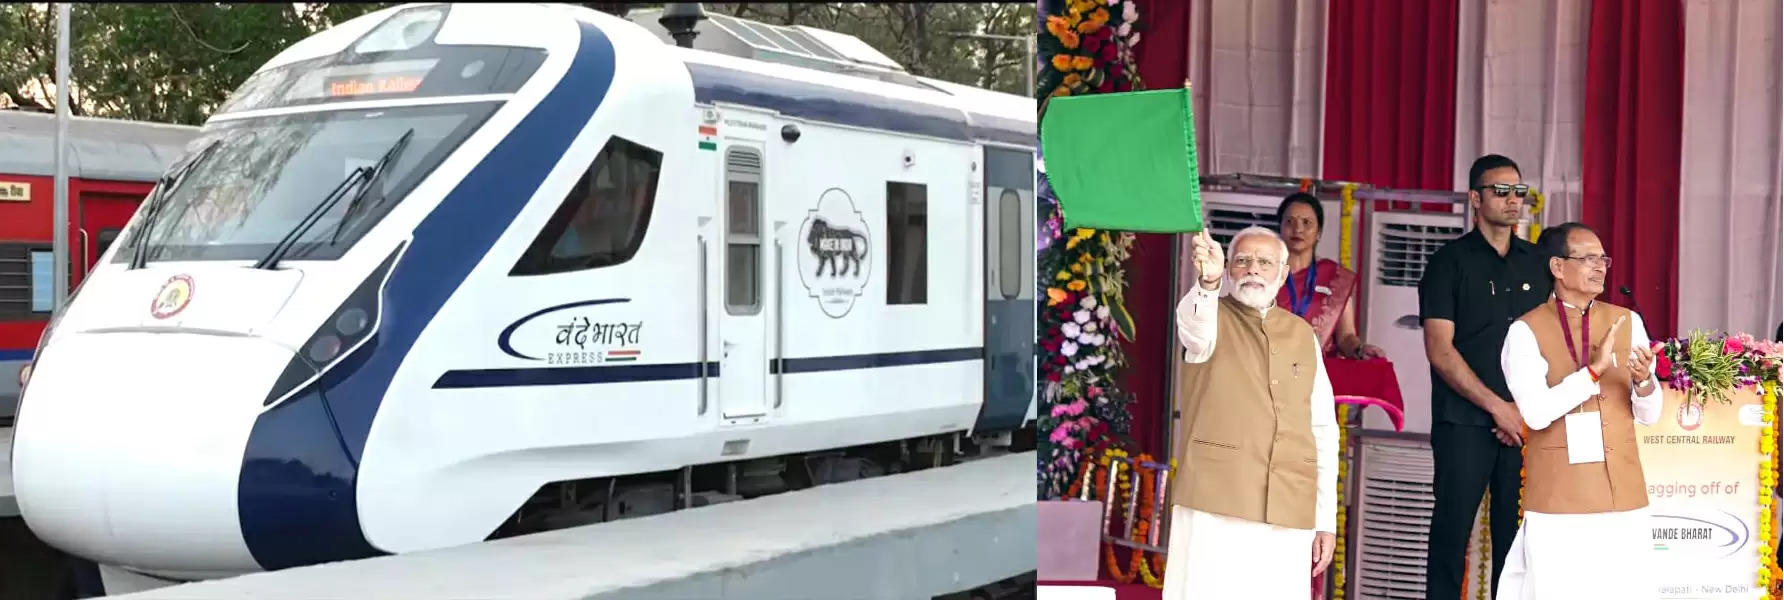  उमंग और तरंग का प्रतीक है नए भारत की वंदे भारत ट्रेनः प्रधानमंत्री